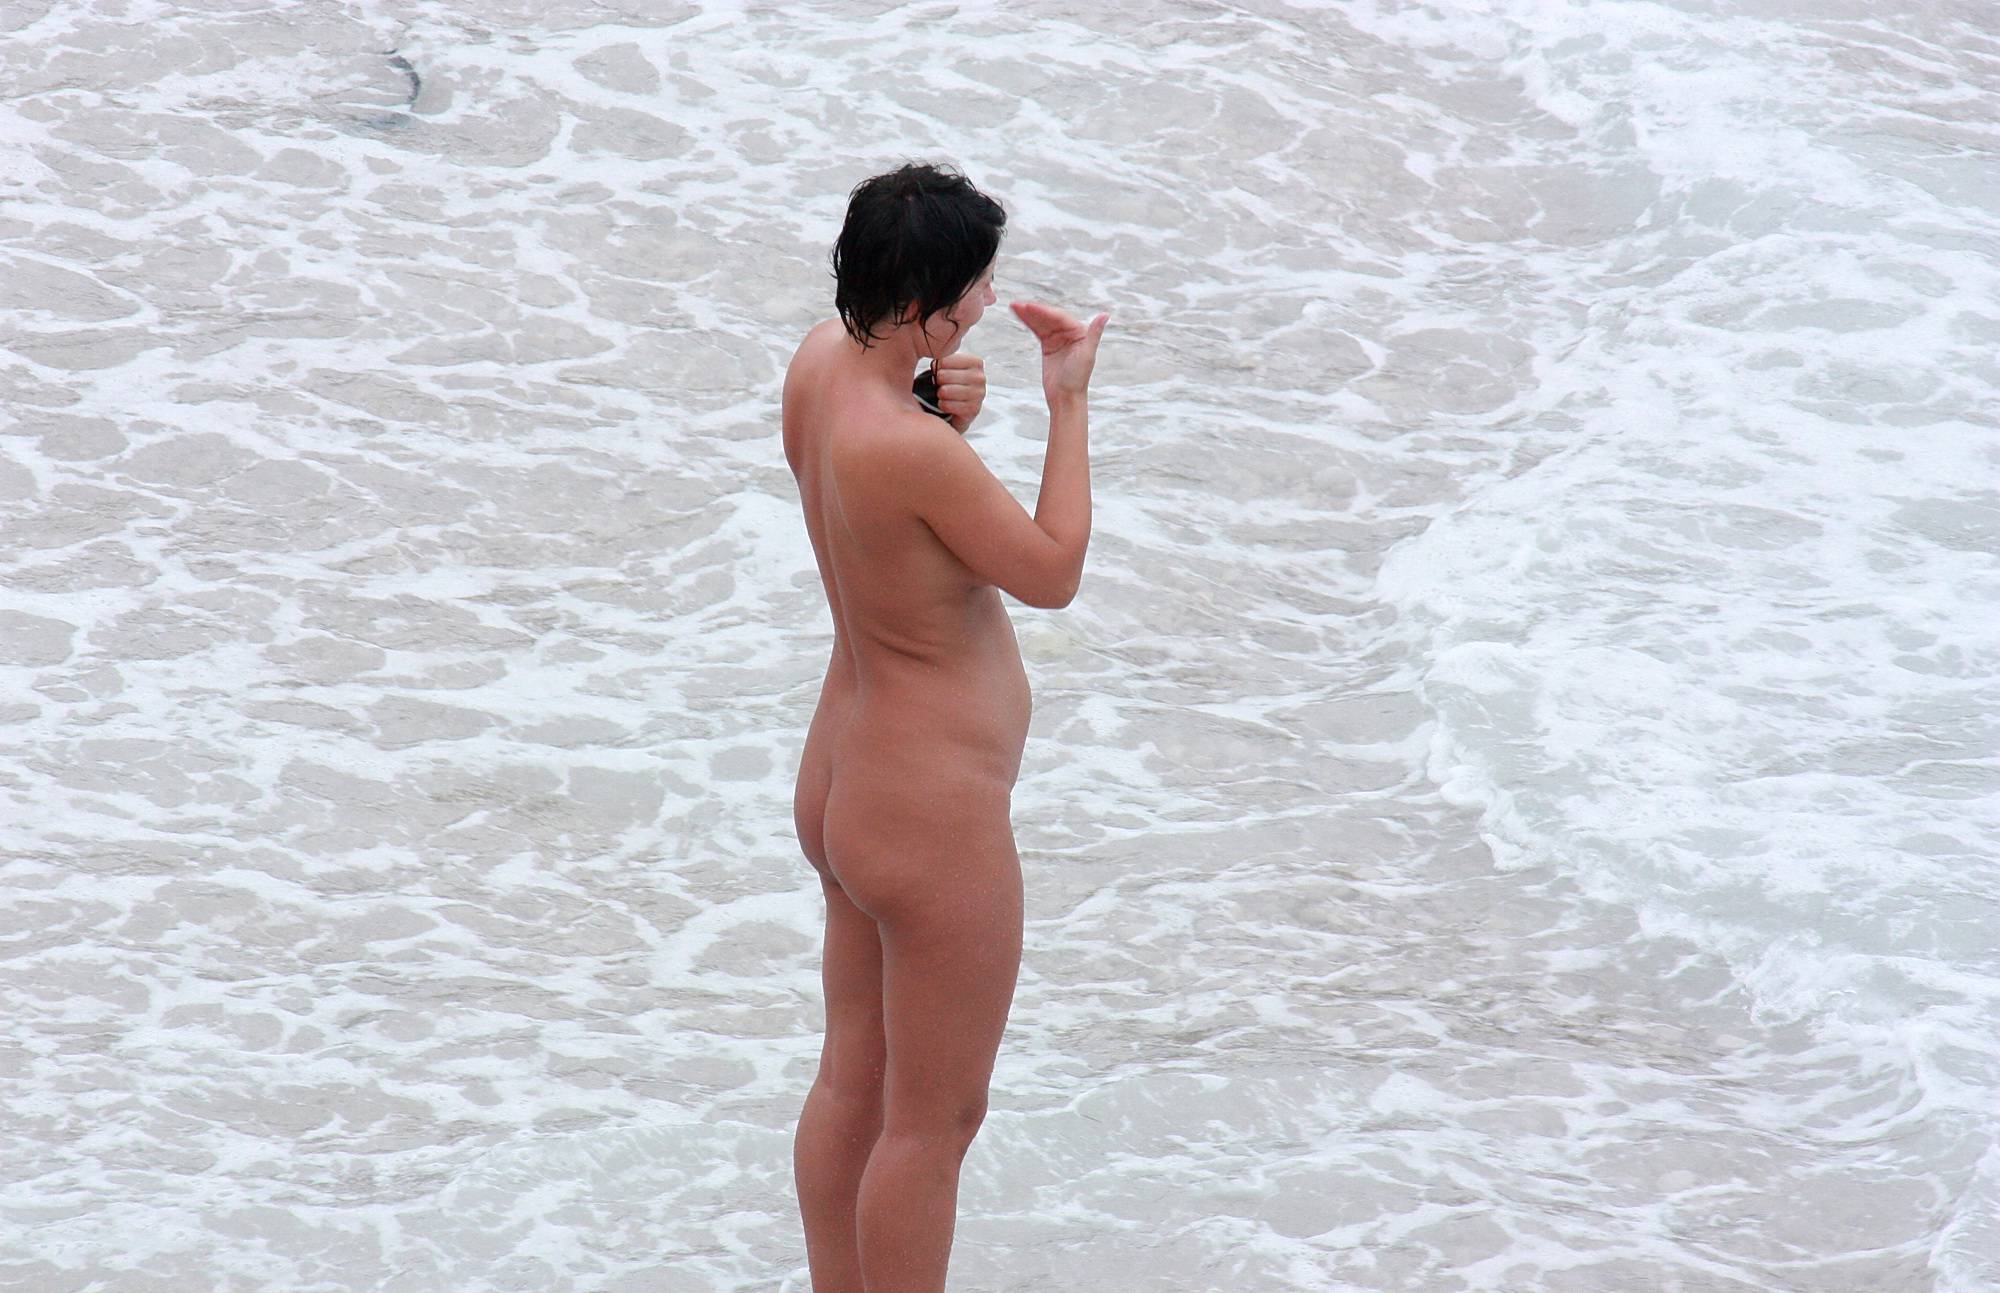 Nudist Pics Swimming Fierce Waves - 1